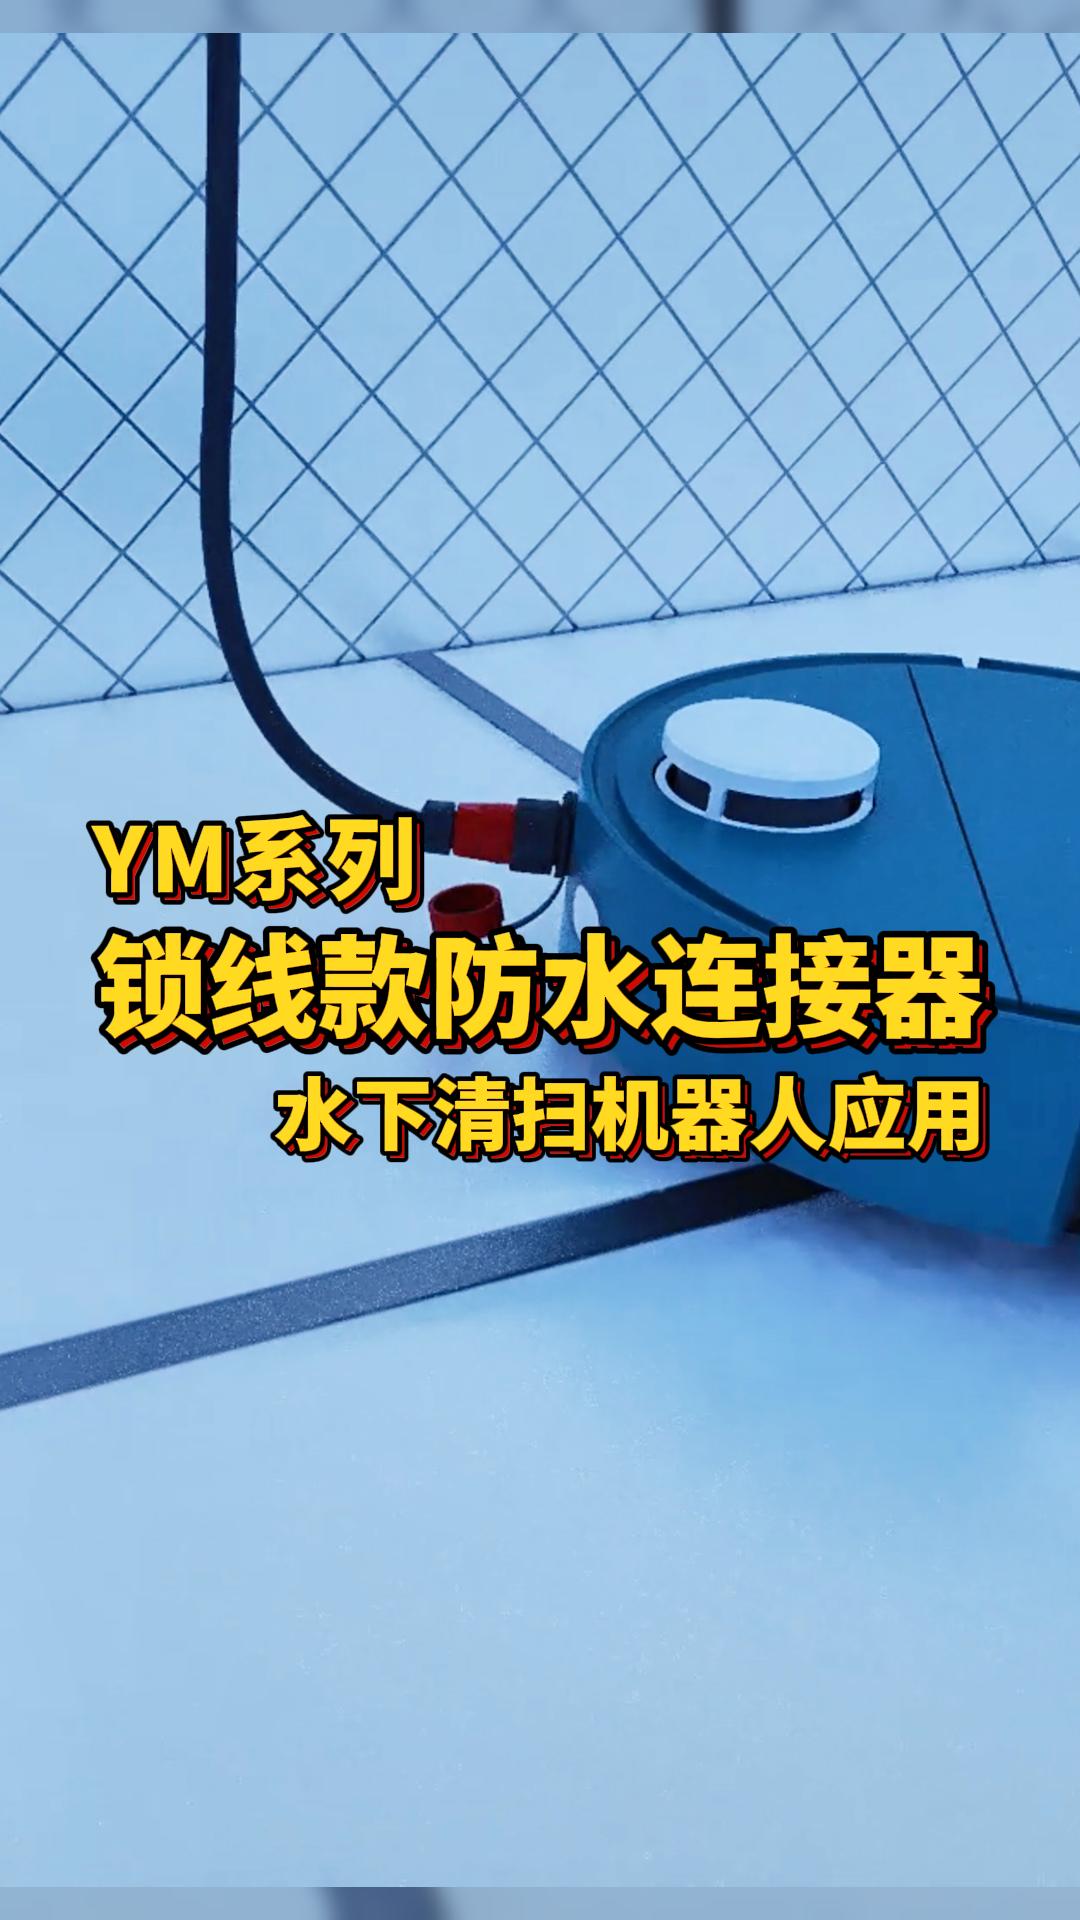 凌科电气YM系列锁线款防水连接器适配水下清扫机器人：高防水耐腐蚀，无惧涉水环境！#防水连接器 #机器人 